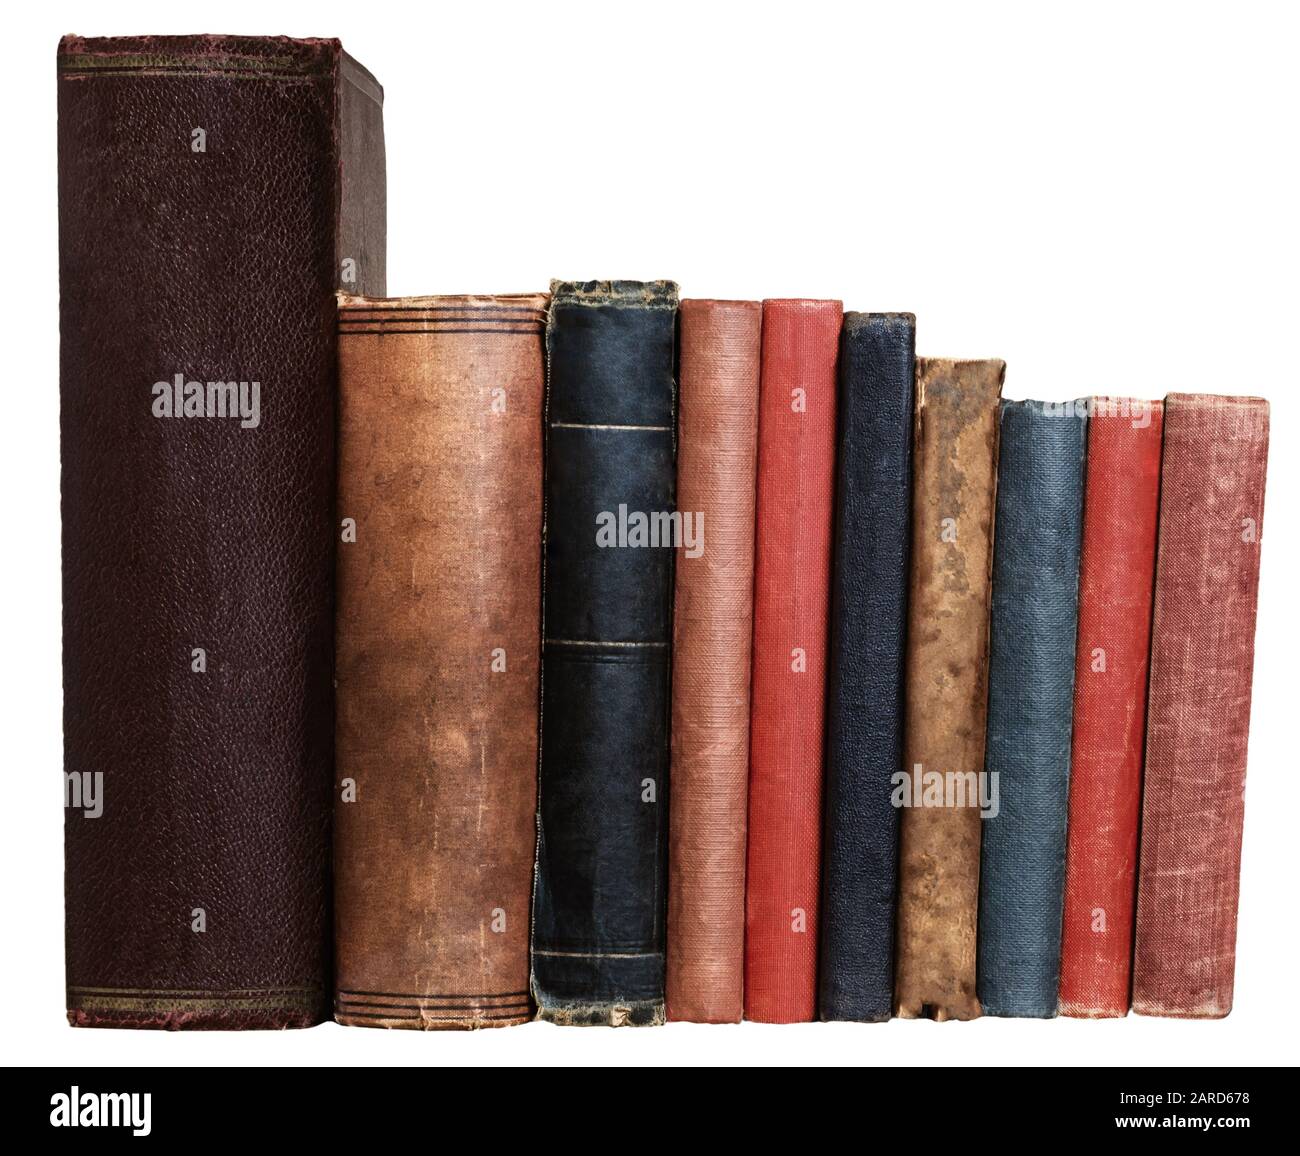 Eine Reihe alter Bücher in verschiedenen Farben und Größen, isoliert auf weißem Hintergrund. Leere Stacheln, die auf Augenhöhe dem Betrachter zugewandt sind. Stockfoto